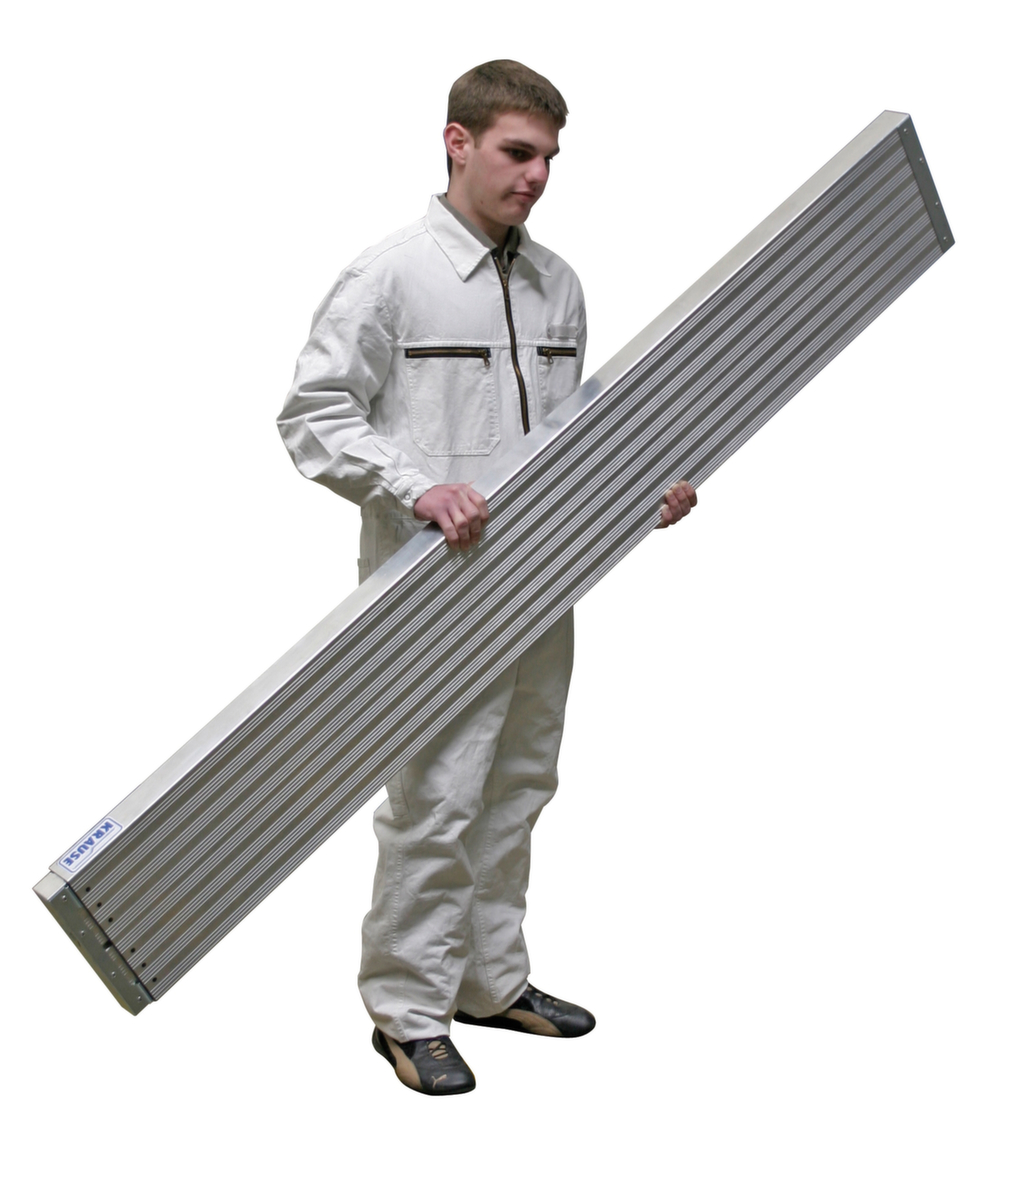 Krause Telescopische dekvloer voor staande ladder met sporten